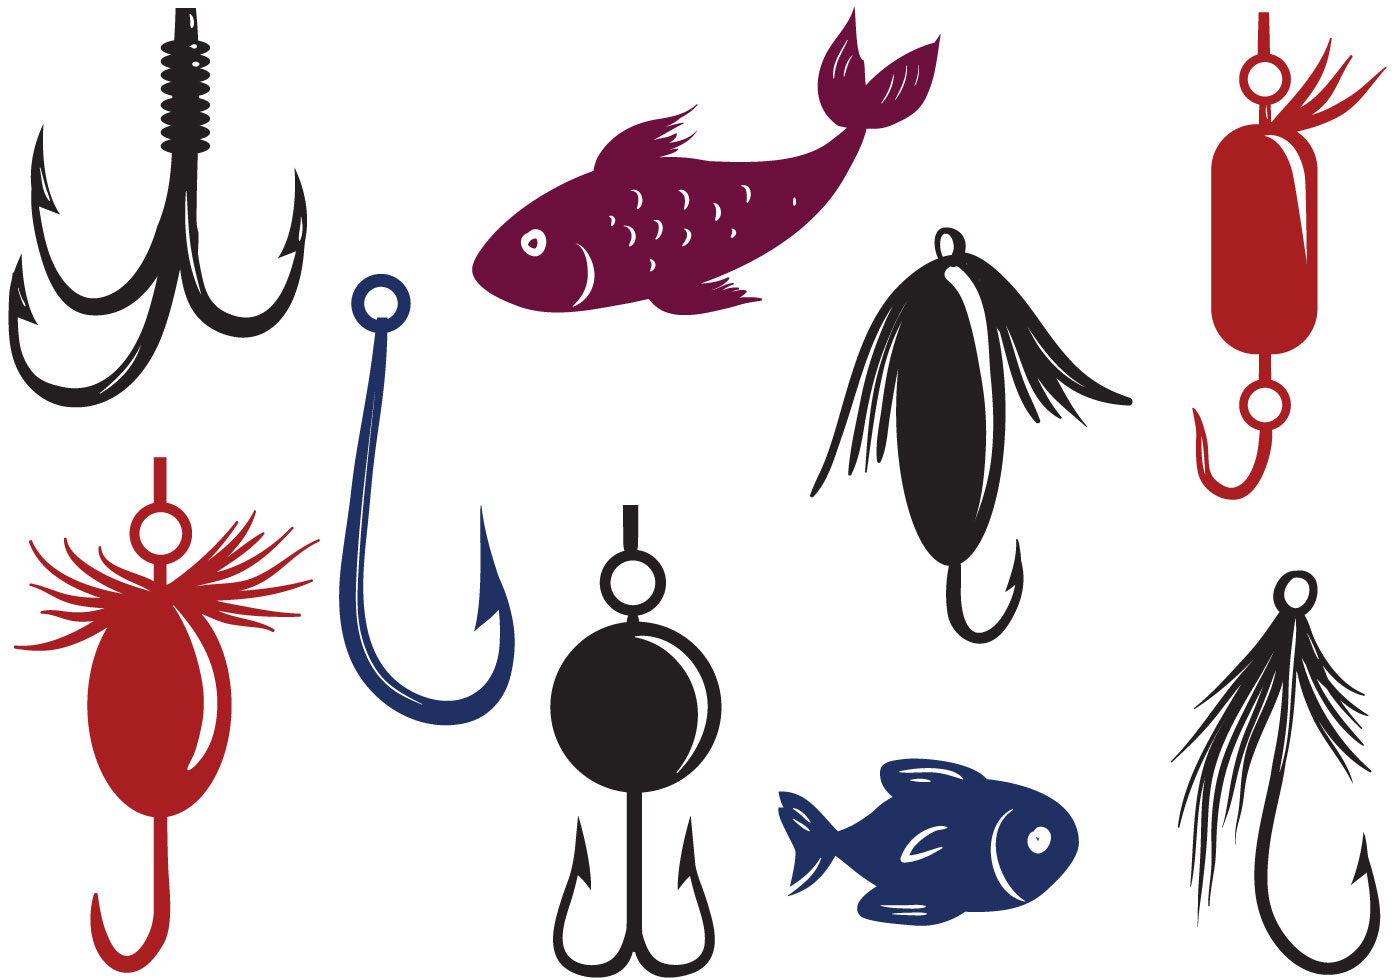 Free Fishing Lure Vectors - Download Free Vectors, Clipart Graphics & Vector Art